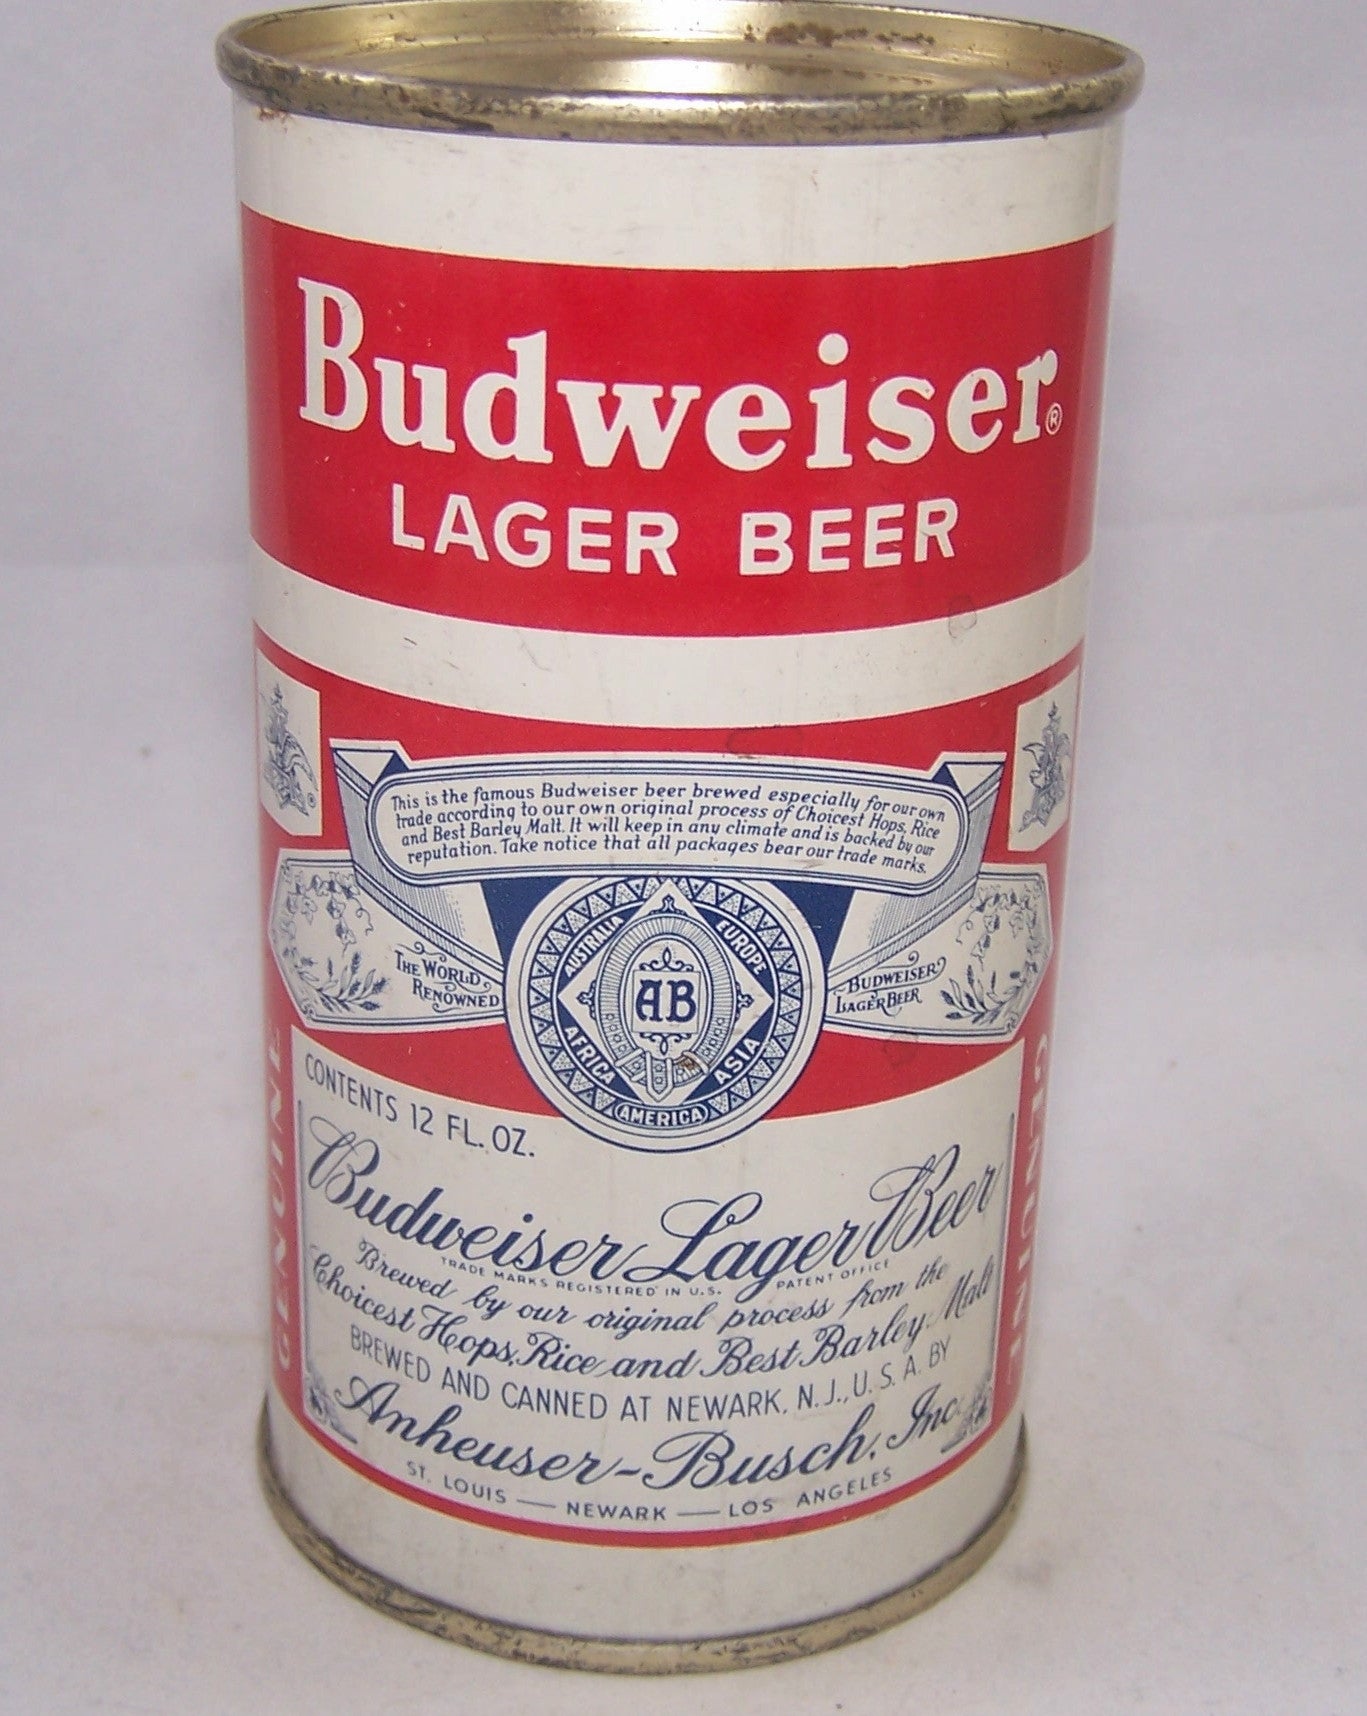 Budweiser Lager Beer, (Split Label NJ) USBC 44-32, Grade 1/1+ Sold on 02/19/18